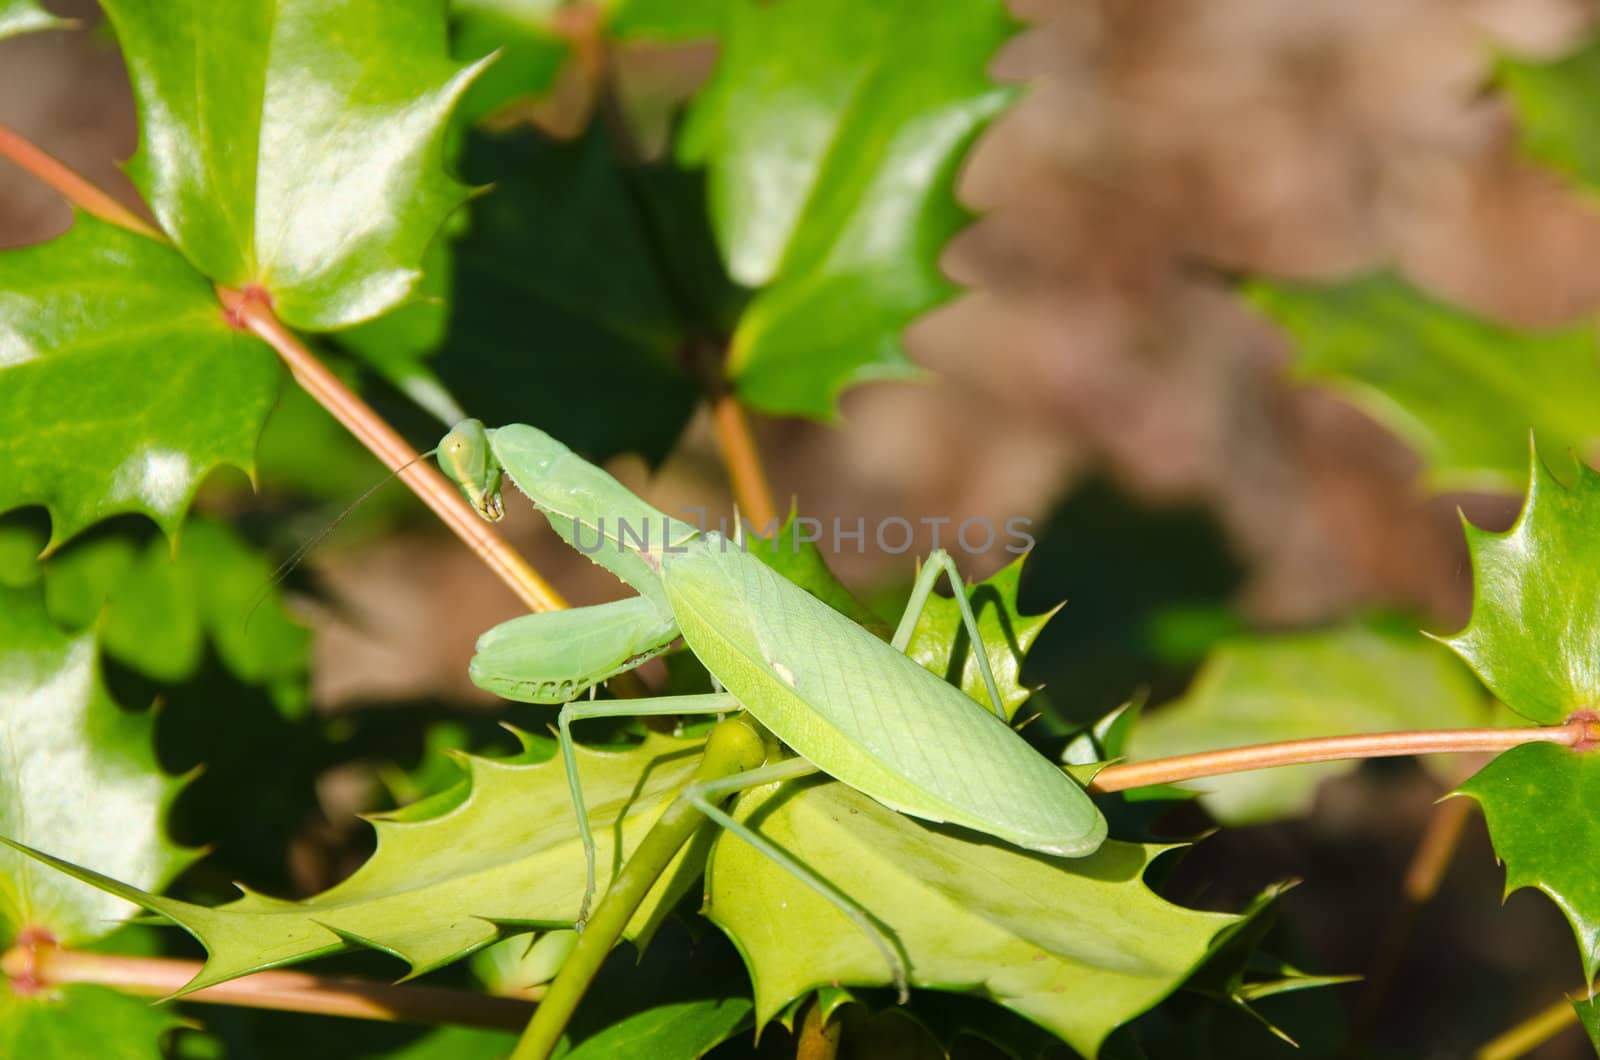 Green japanese praying mantis sitting on a green leaf